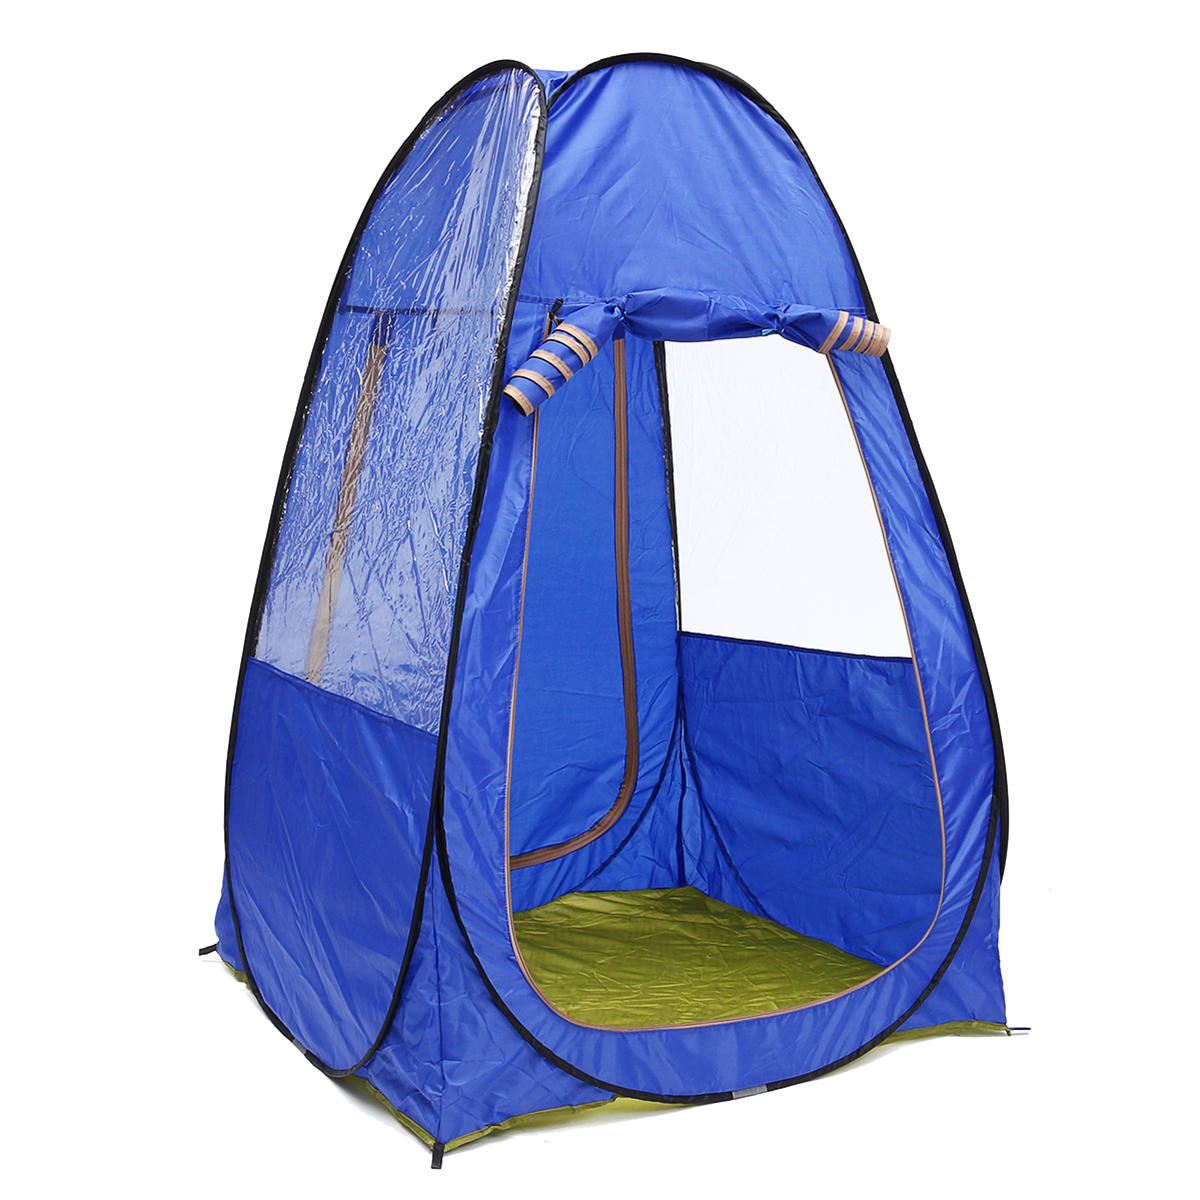 Tenda de camping portátil para 1-2 pessoas, dobrável, à prova de raios UV, à prova de água, com toldo para proteção solar